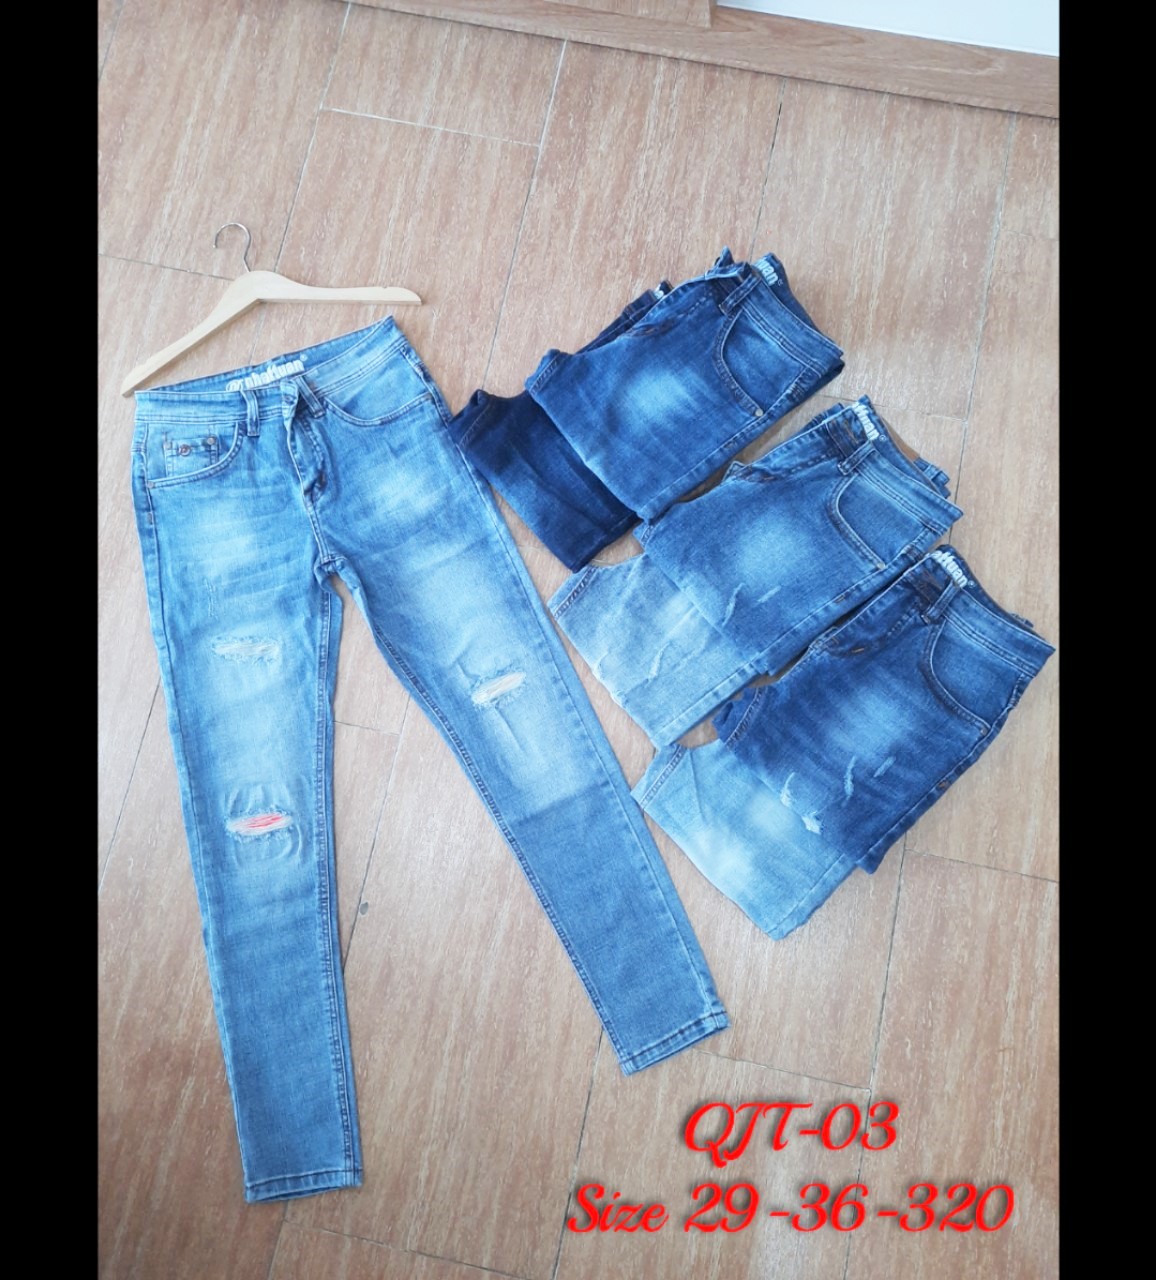 Thời trang nam quần Jean trẻ phong cách của Nhật Tuấn (NATA)